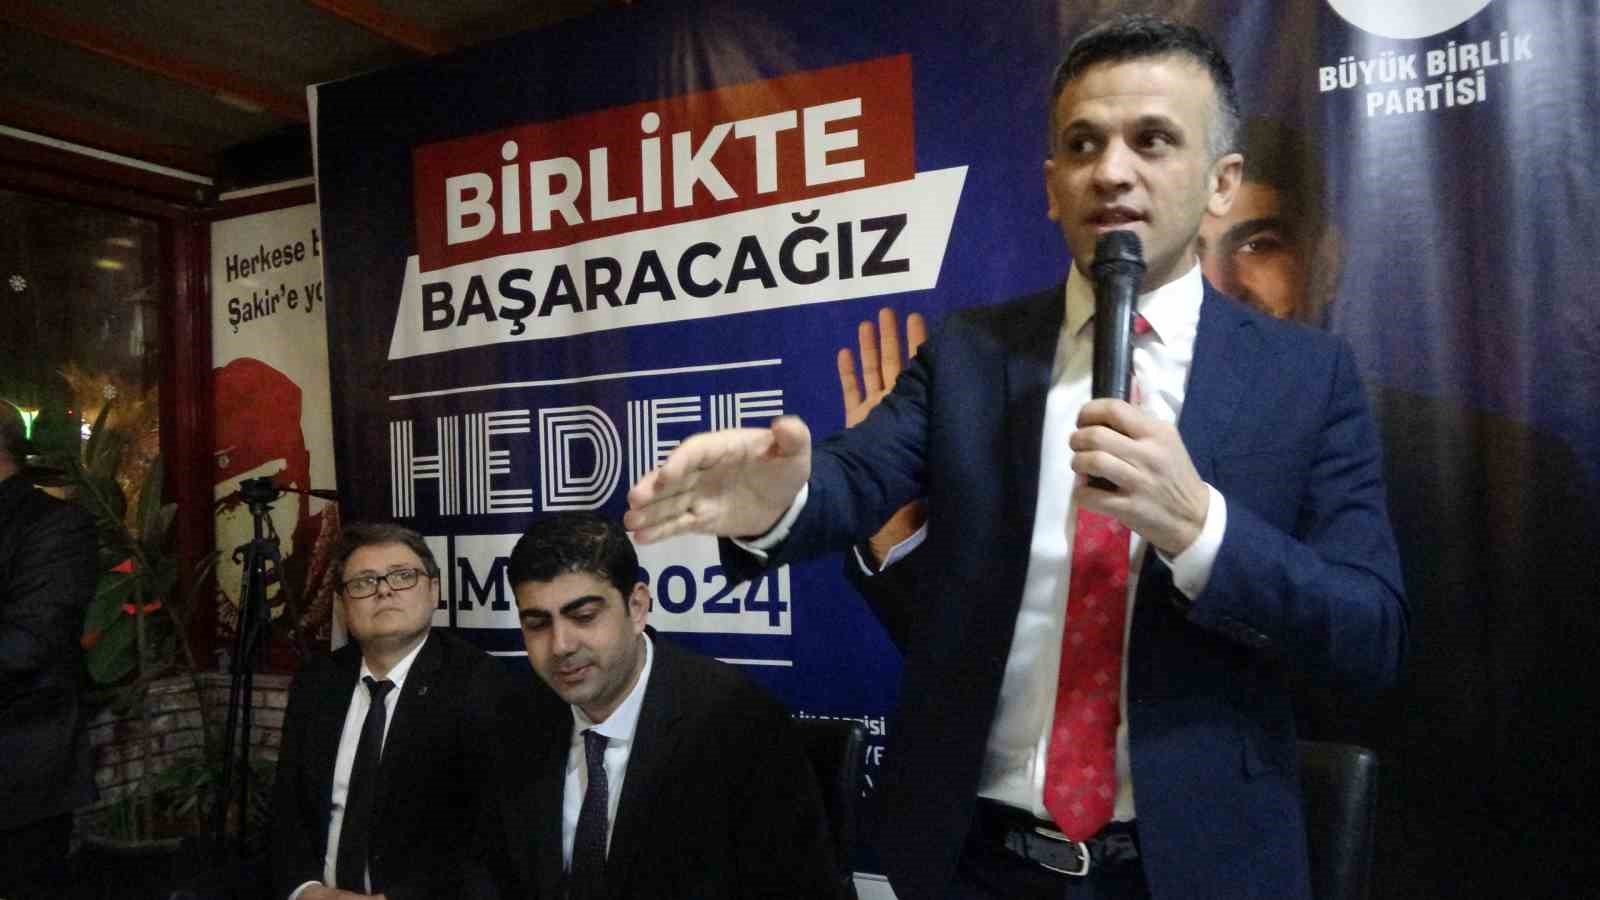 Ekrem İmamoğlu Adana'da Kozan adaylarına müdahale mi etti?